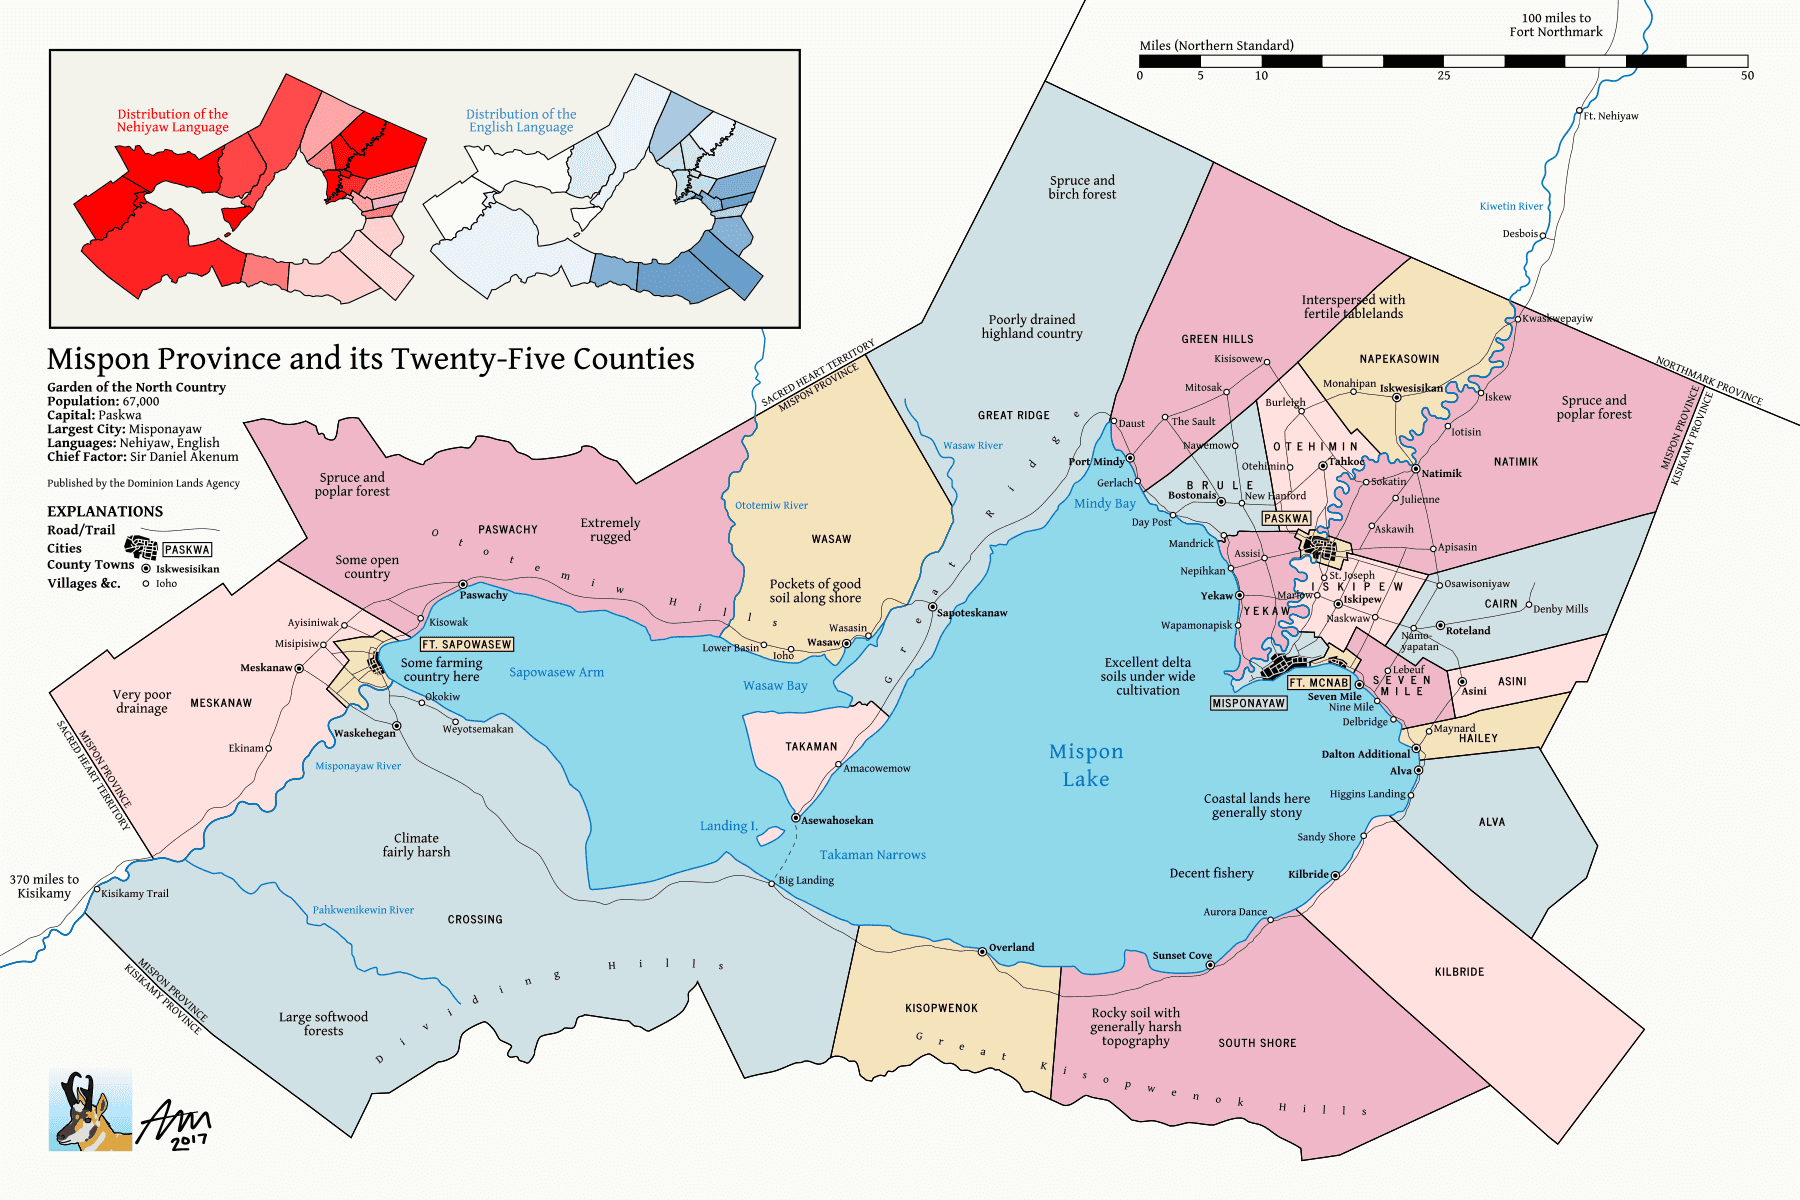 A fictional province.